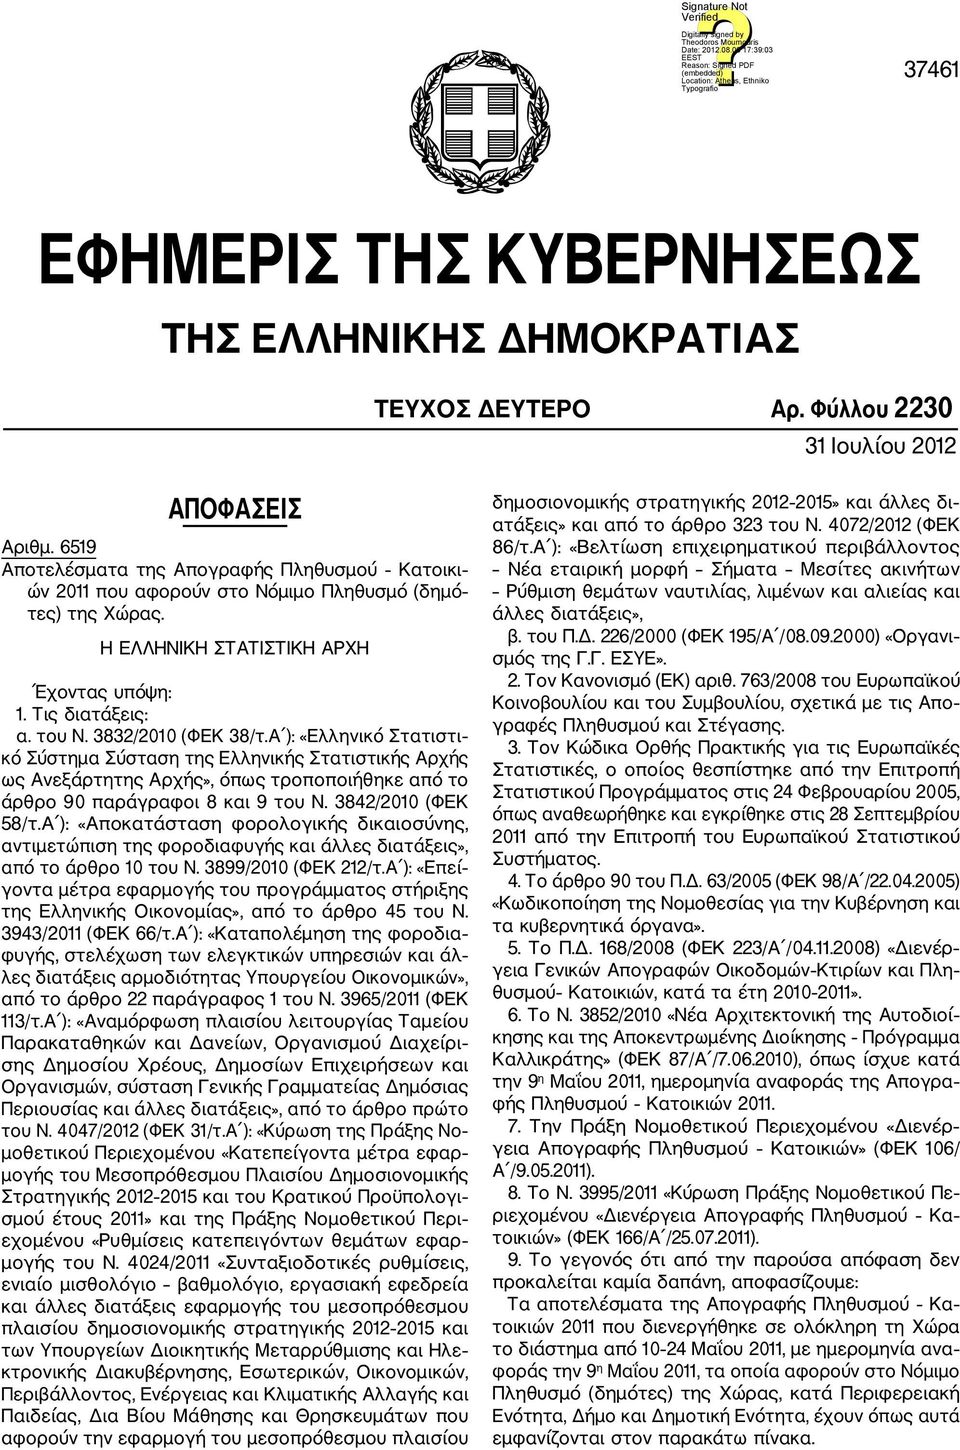 3832/2010 (ΦΕΚ 38/τ.Α ): «Ελληνικό Στατιστι κό Σύστημα Σύσταση της Ελληνικής Στατιστικής Αρχής ως Ανεξάρτητης Αρχής», όπως τροποποιήθηκε από το άρθρο 90 παράγραφοι 8 και 9 του Ν. 3842/2010 (ΦΕΚ 58/τ.